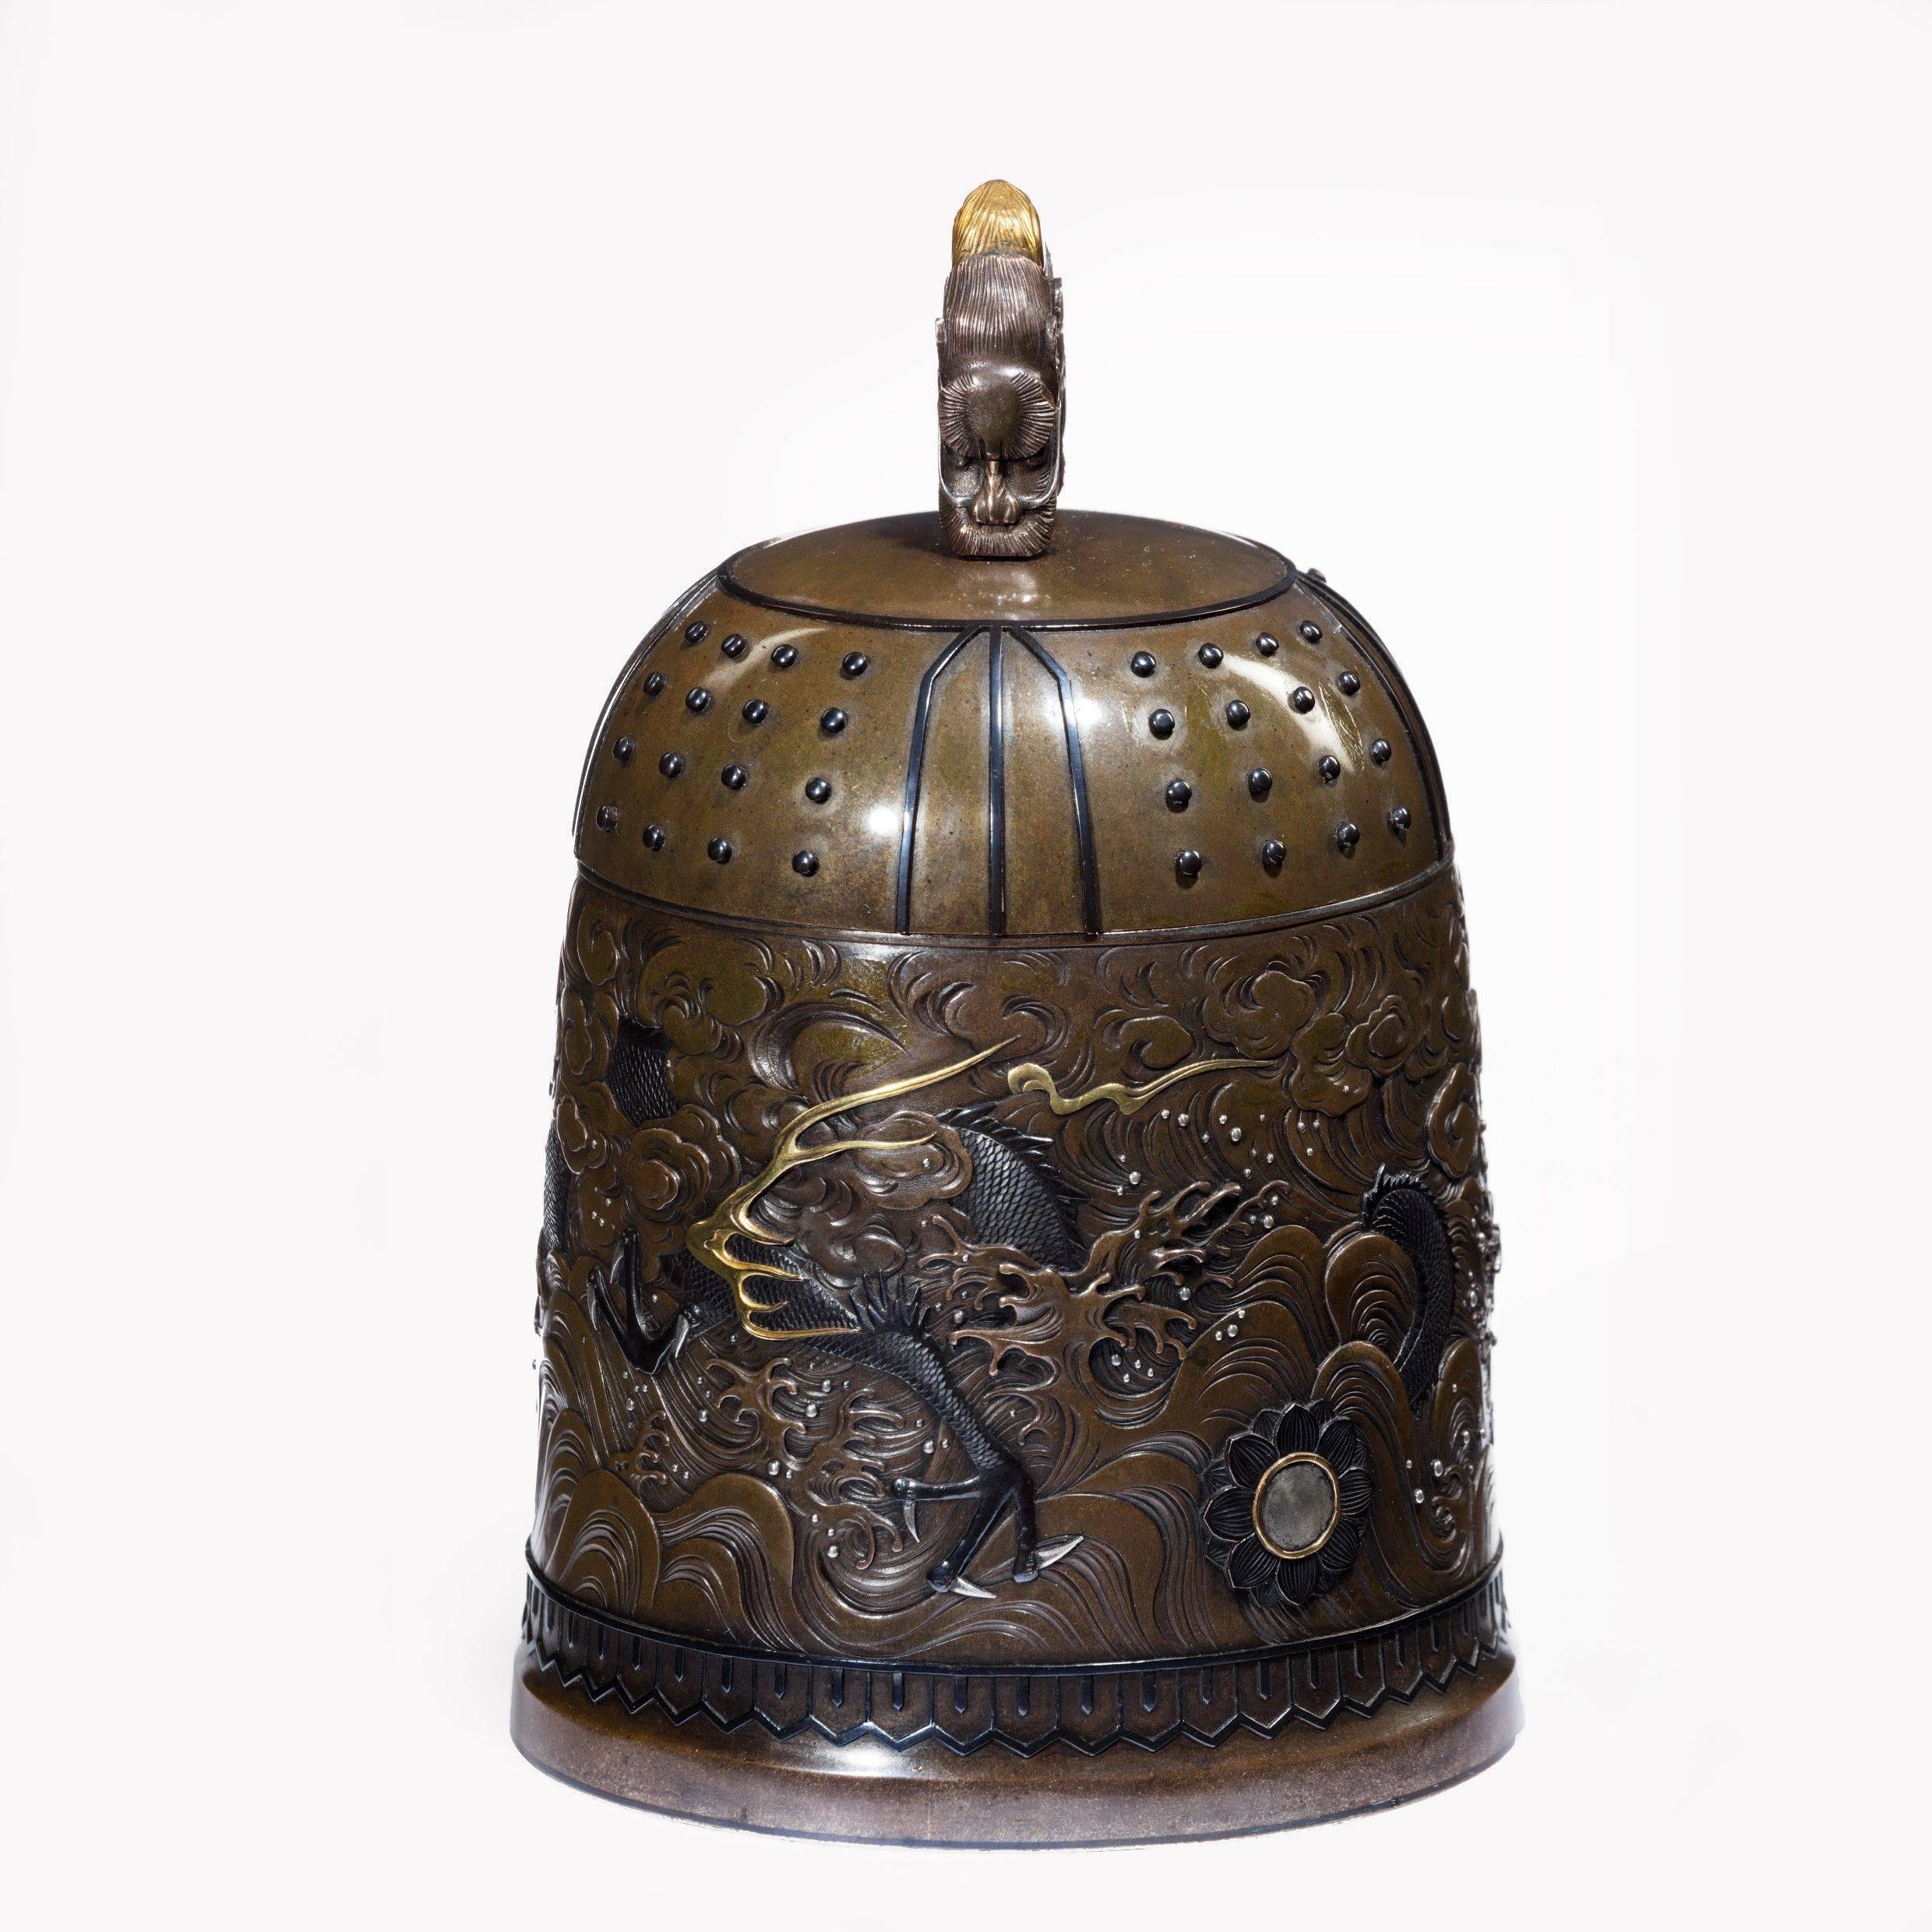 Exceptionnel coffret de cloche en métal mixte de la période Meiji, réalisé par la fonderie Nogowa,
De forme typique avec un fond shibuichi travaillé en shakudo, argent et or avec une frise centrale continue montrant un dragon à trois orteils parmi